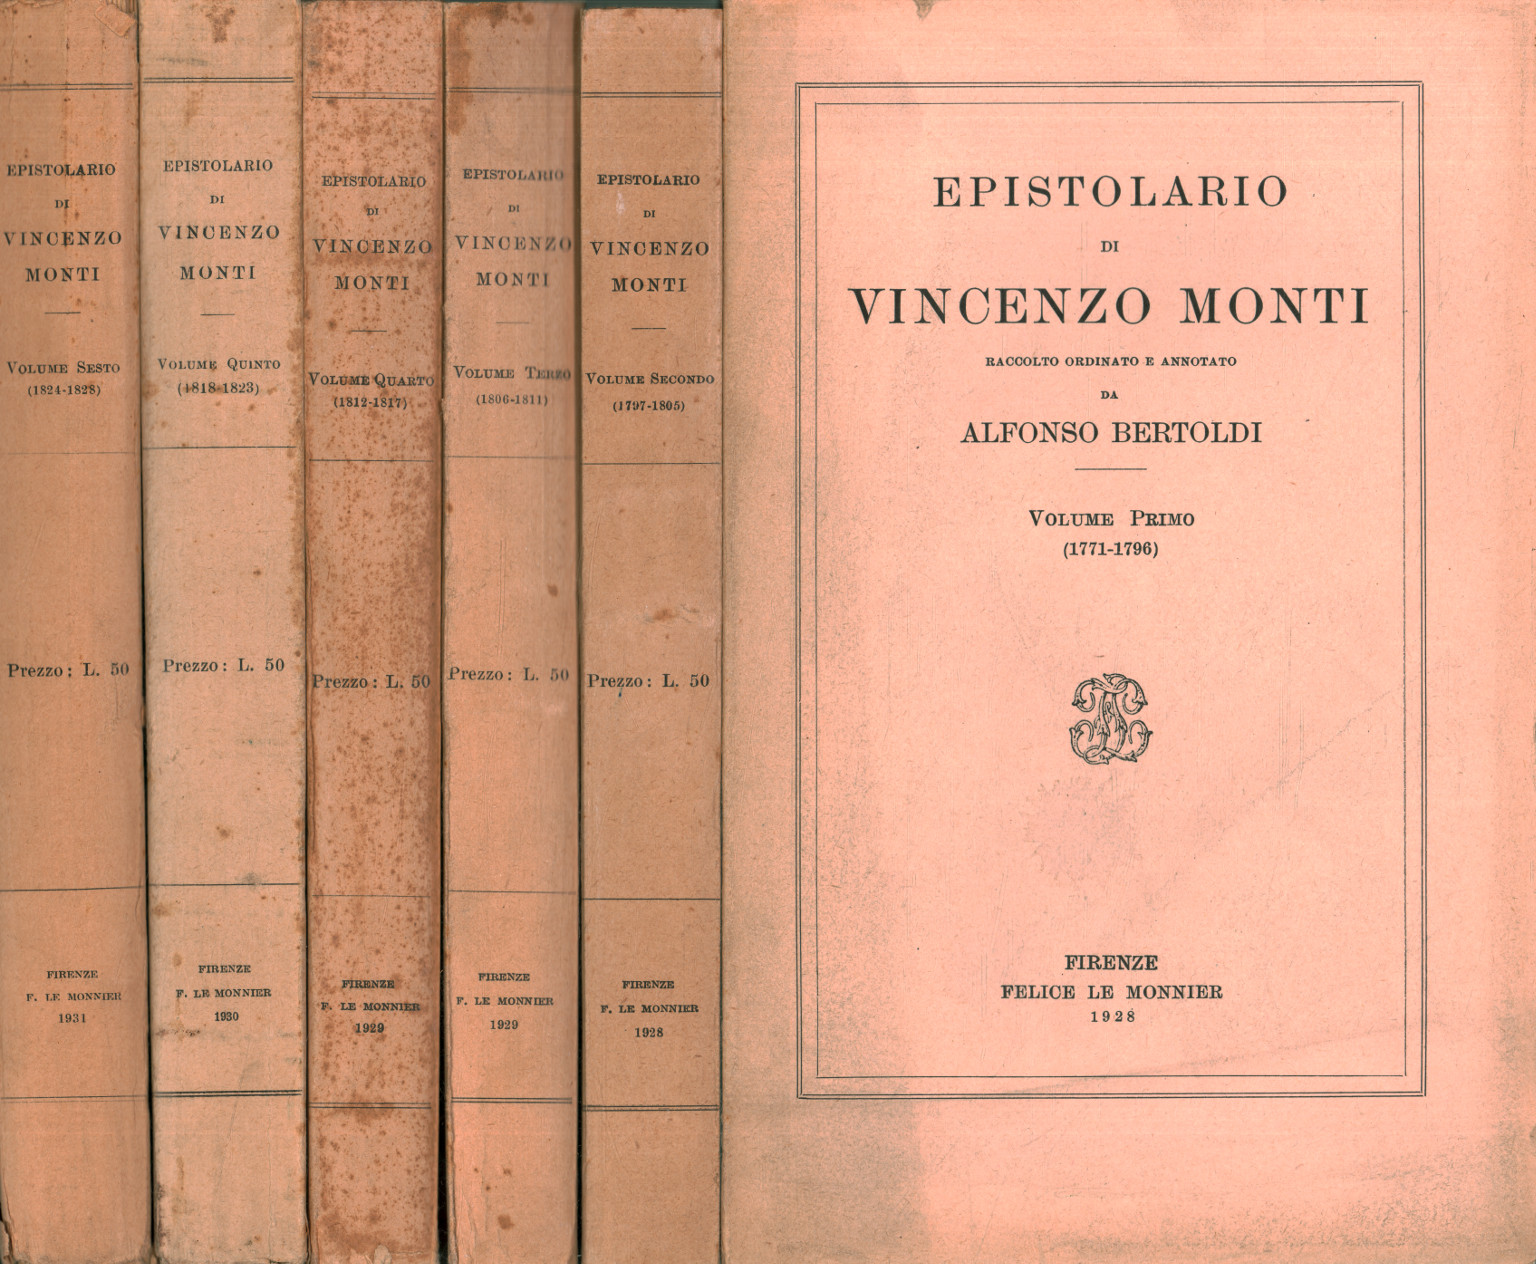 Epistolary of Vincenzo Monti (6 Volumes)